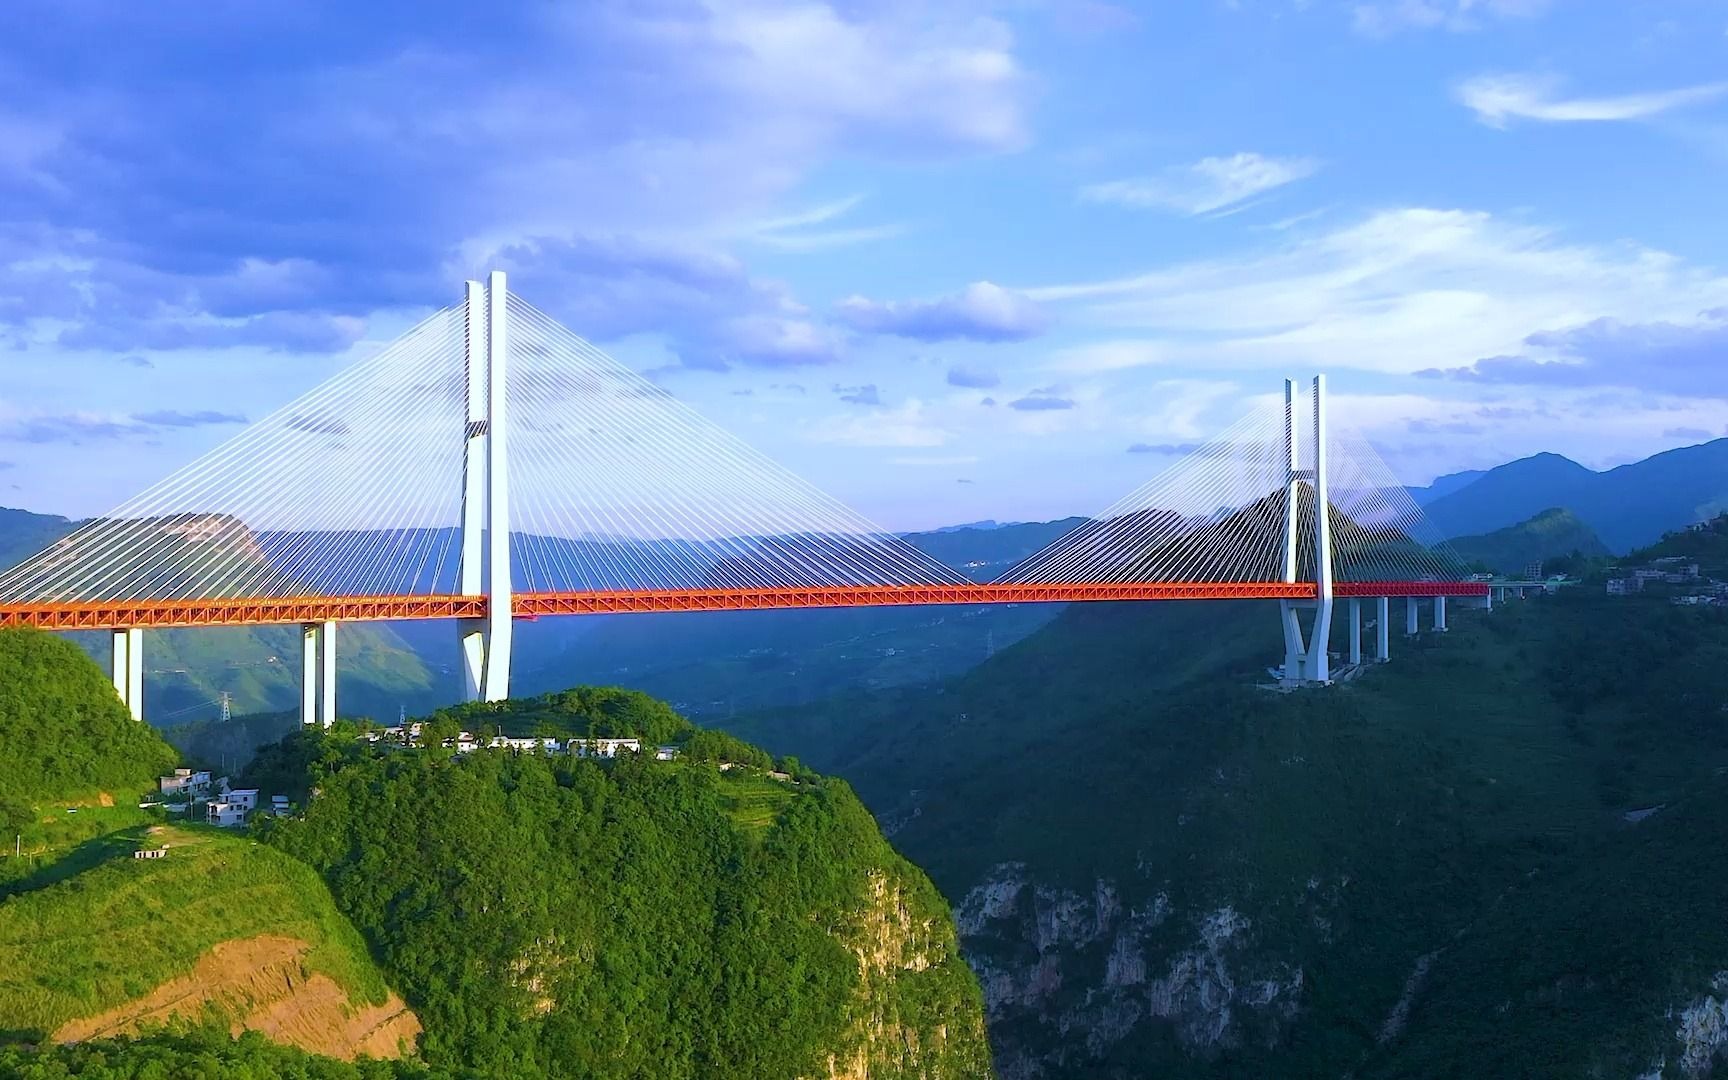 世界第一高桥北盘江大桥,足200层楼高,美国曾说中国不可能完成,中国笑